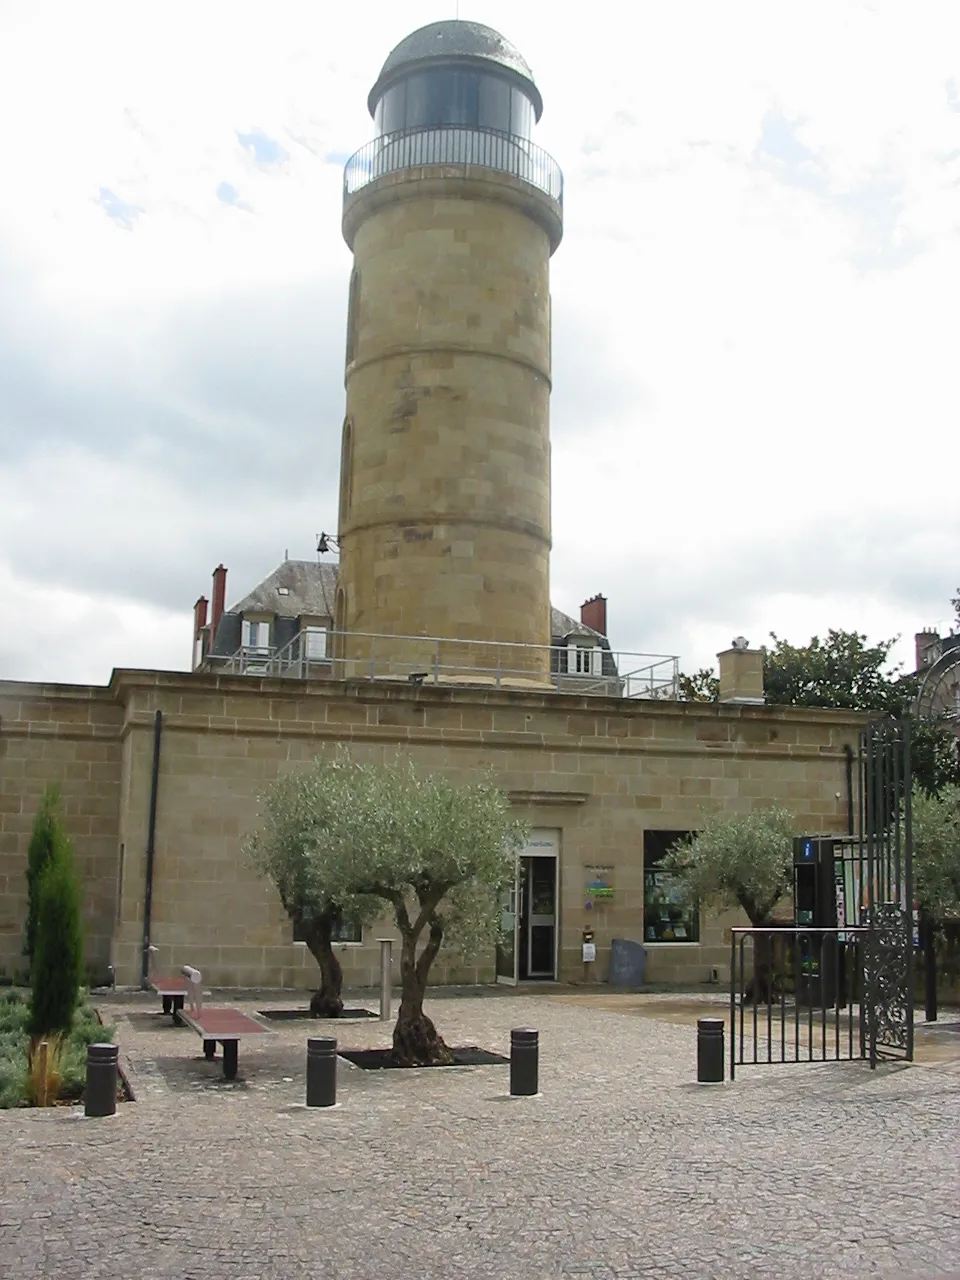 Photo showing: Château d'Eau, élevé au XIX è siècle, surmontant l'office de tourisme de Brive-la-Gaillarde, Corrèze, France